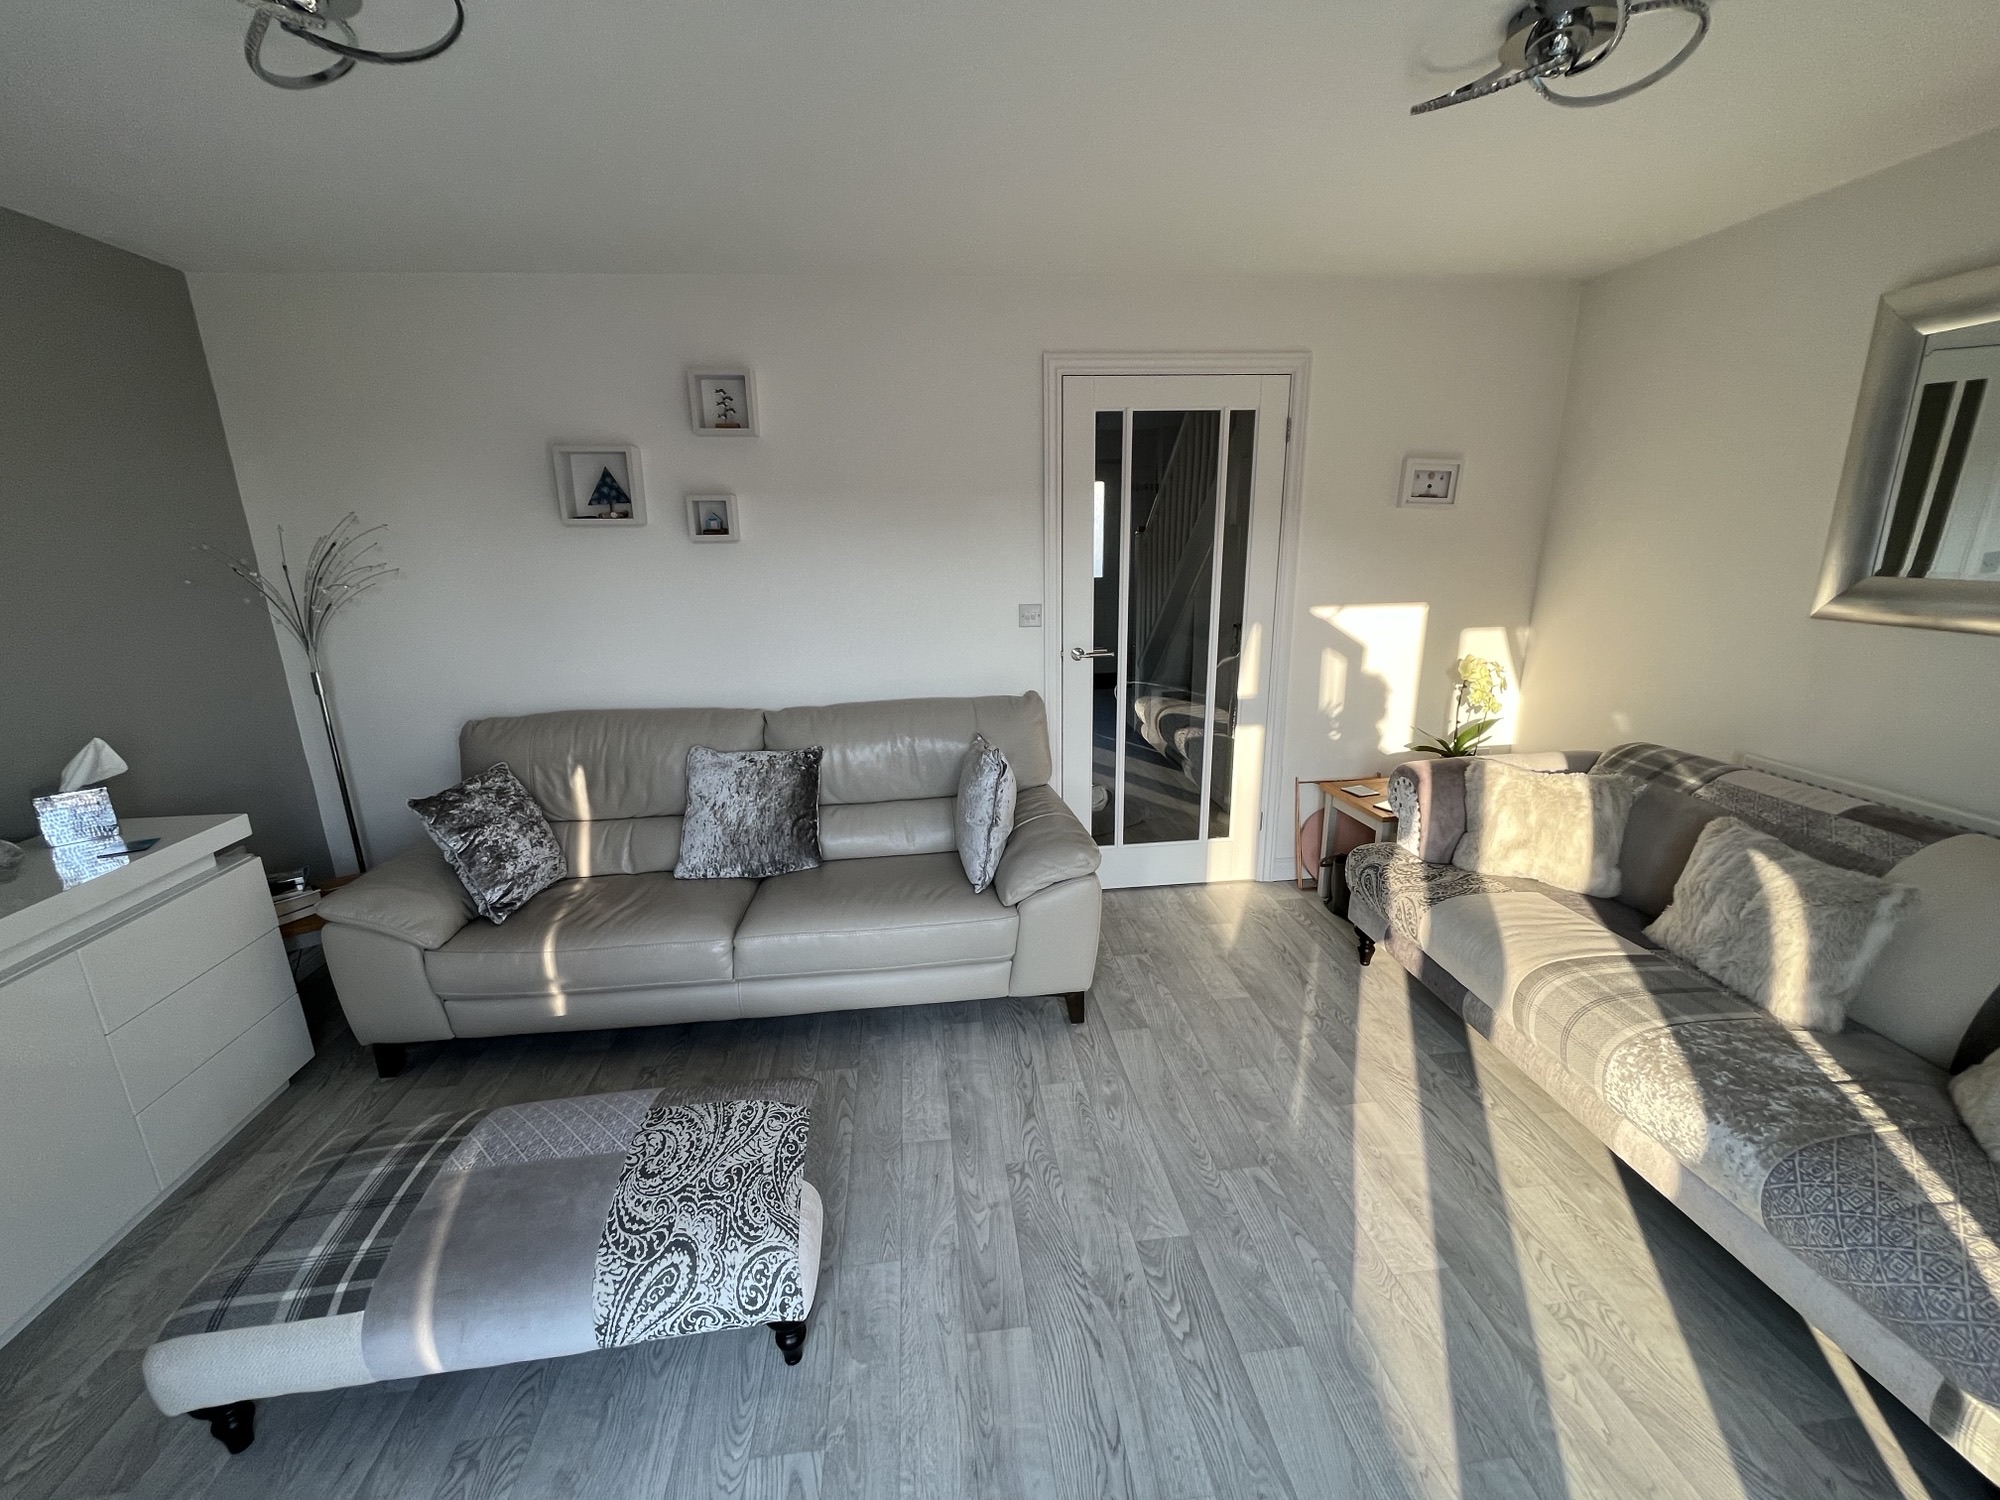 House for rent in Austell - livingroom